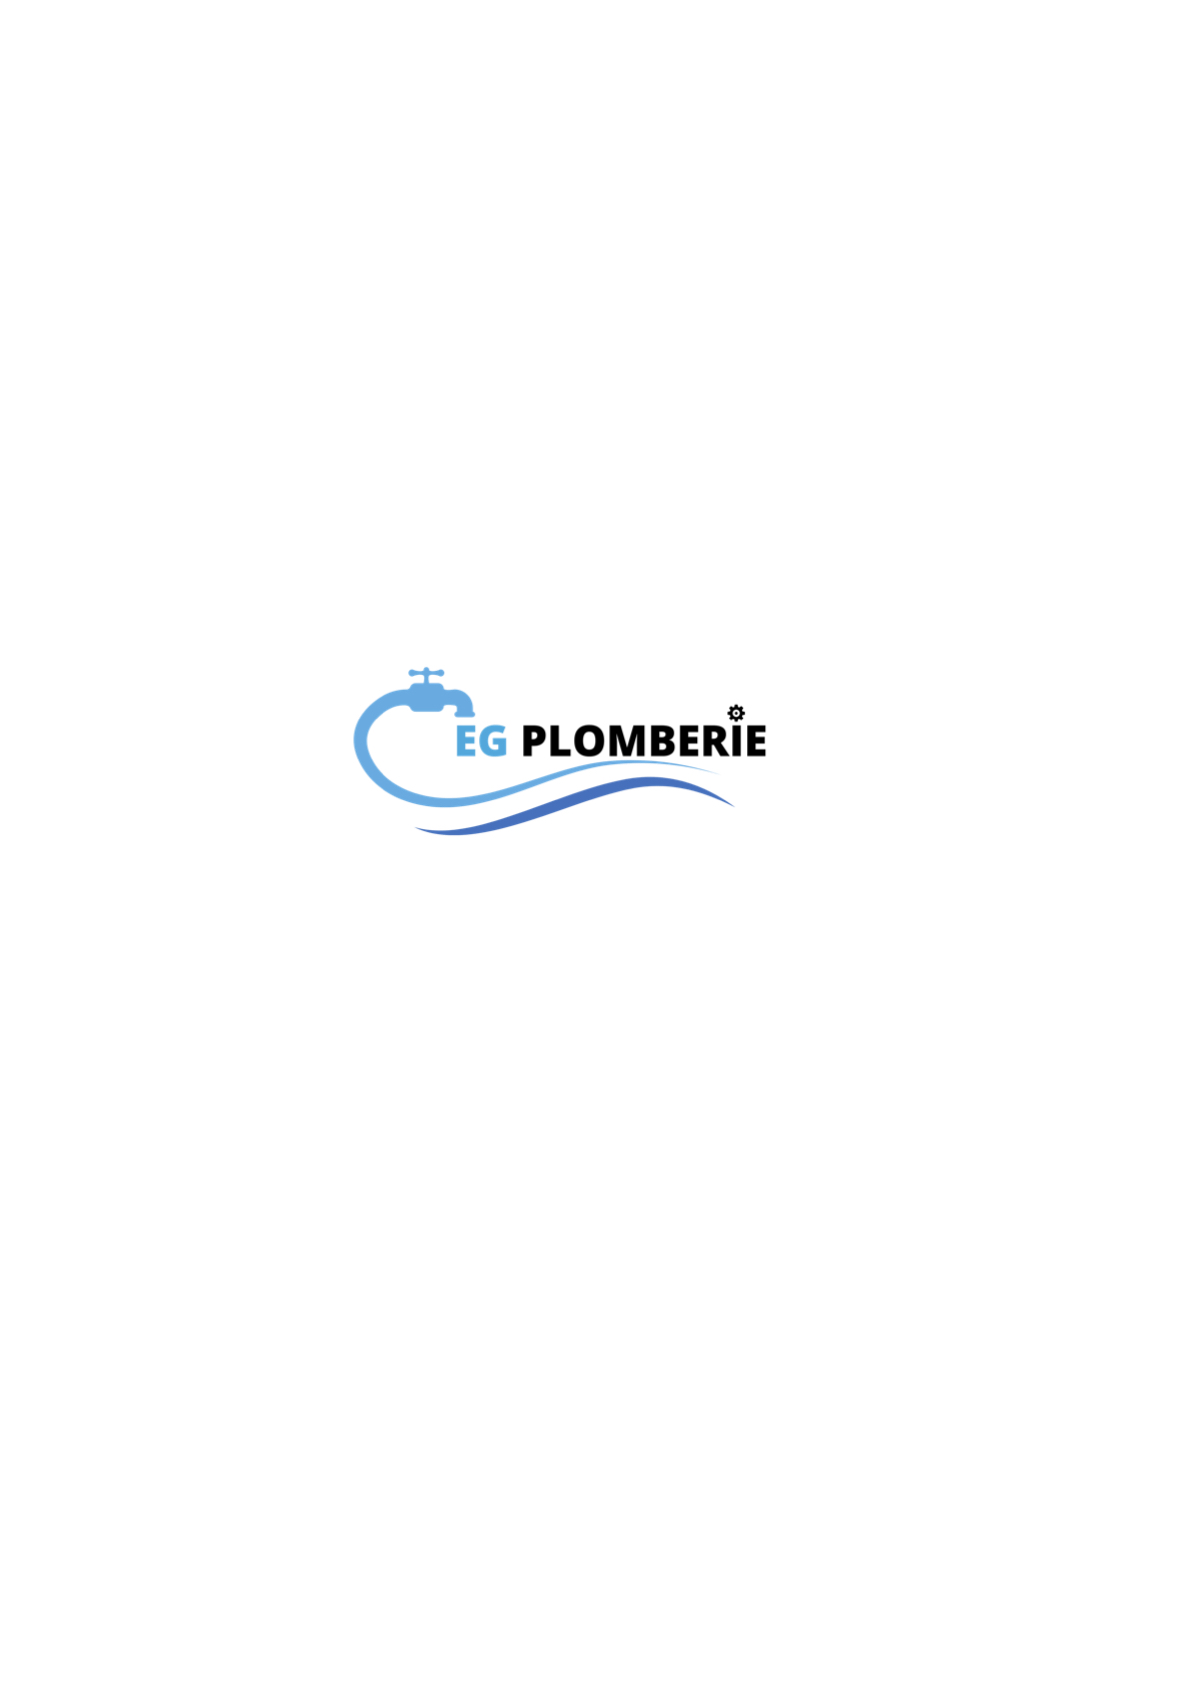 Logo de EG plomberie, société de travaux en Plomberie : installation ou rénovation complète